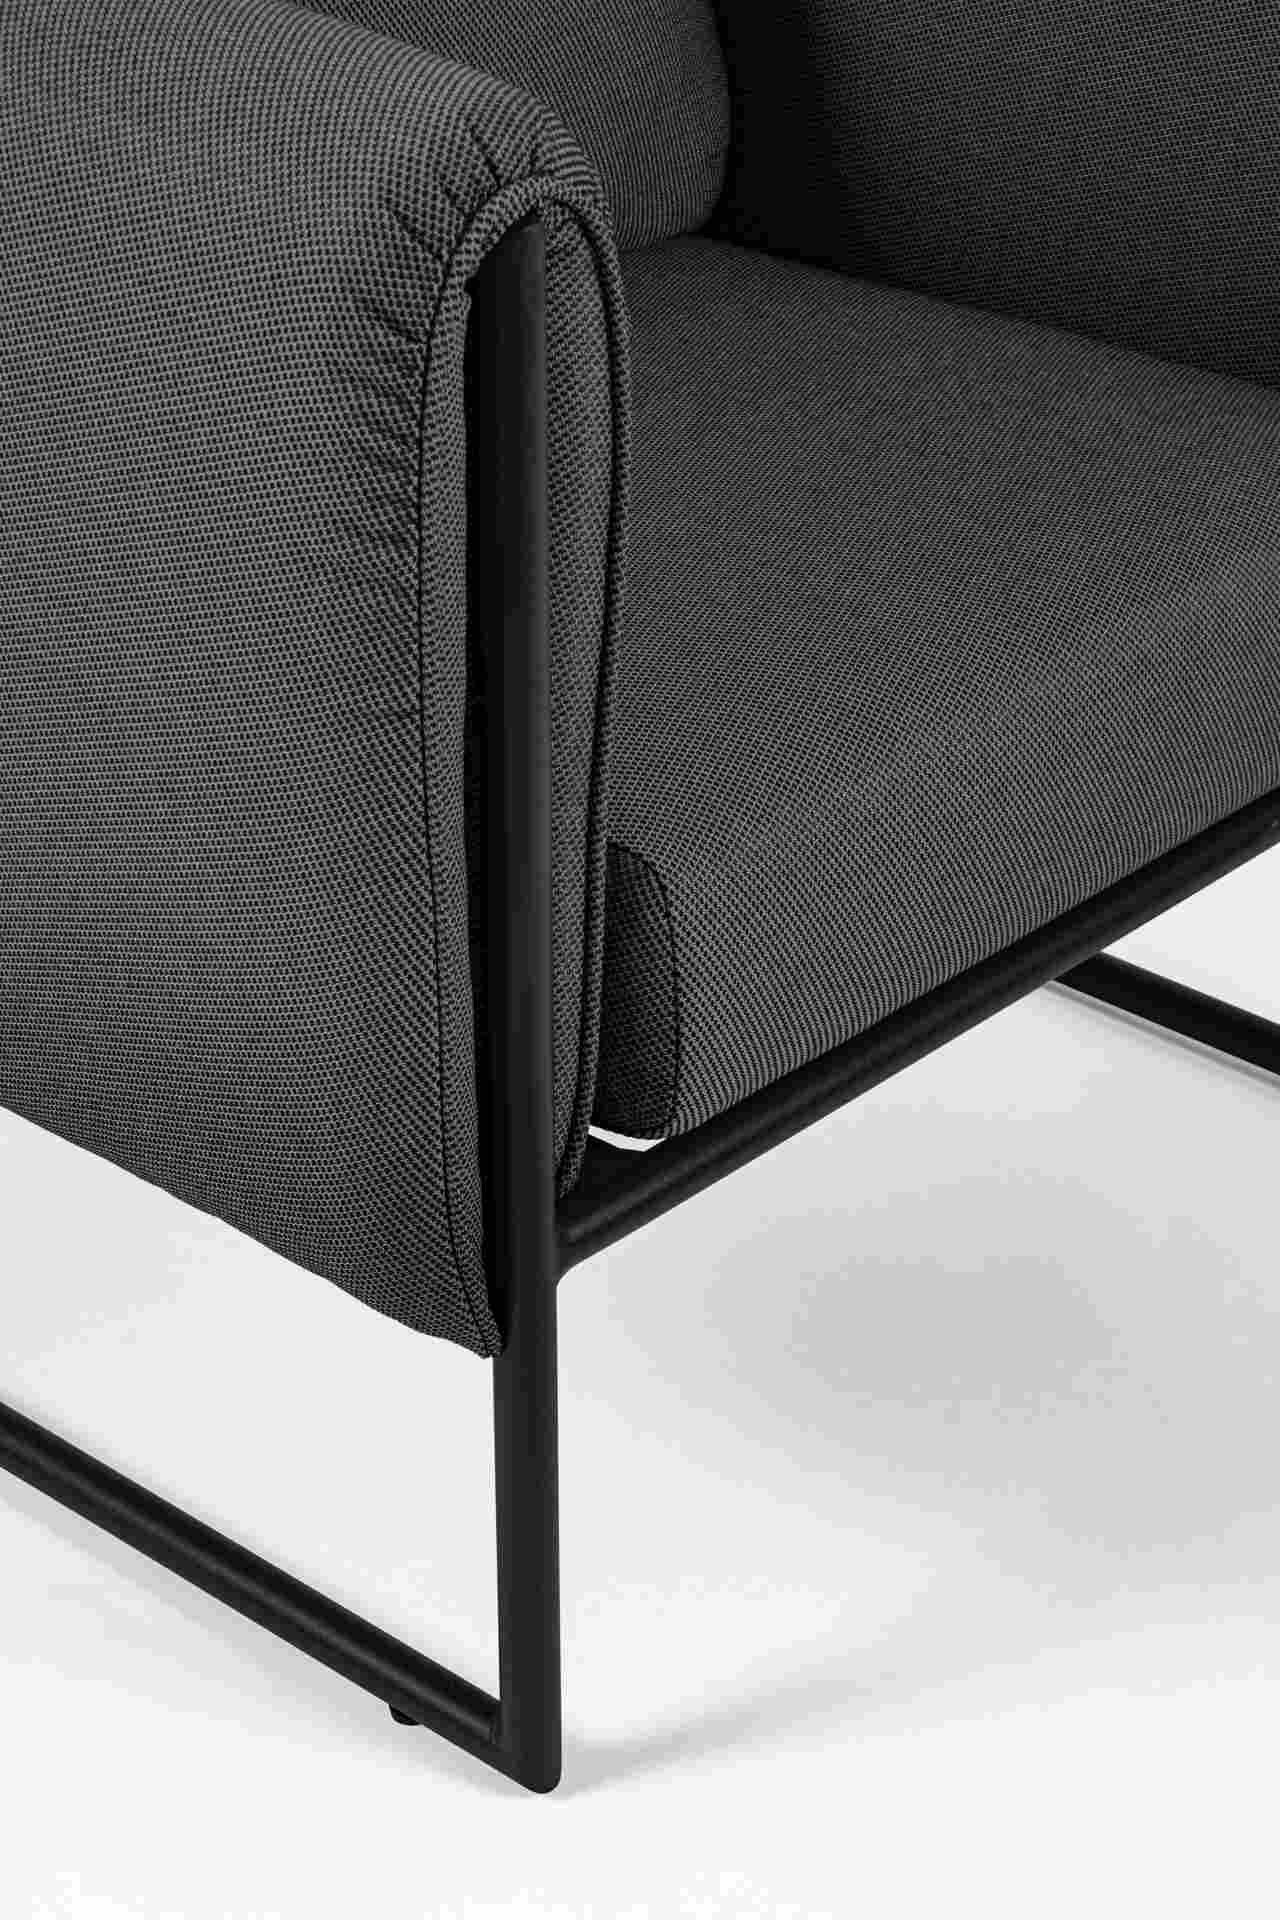 Der Gartensessel Pixel überzeugt mit seinem modernen Design. Gefertigt wurde er aus Olefin-Stoff, welcher einen Anthrazit Farbton besitzt. Das Gestell ist aus Aluminium und hat eine schwarze Farbe. Der Sessel verfügt über eine Sitzhöhe von 42 cm und ist f